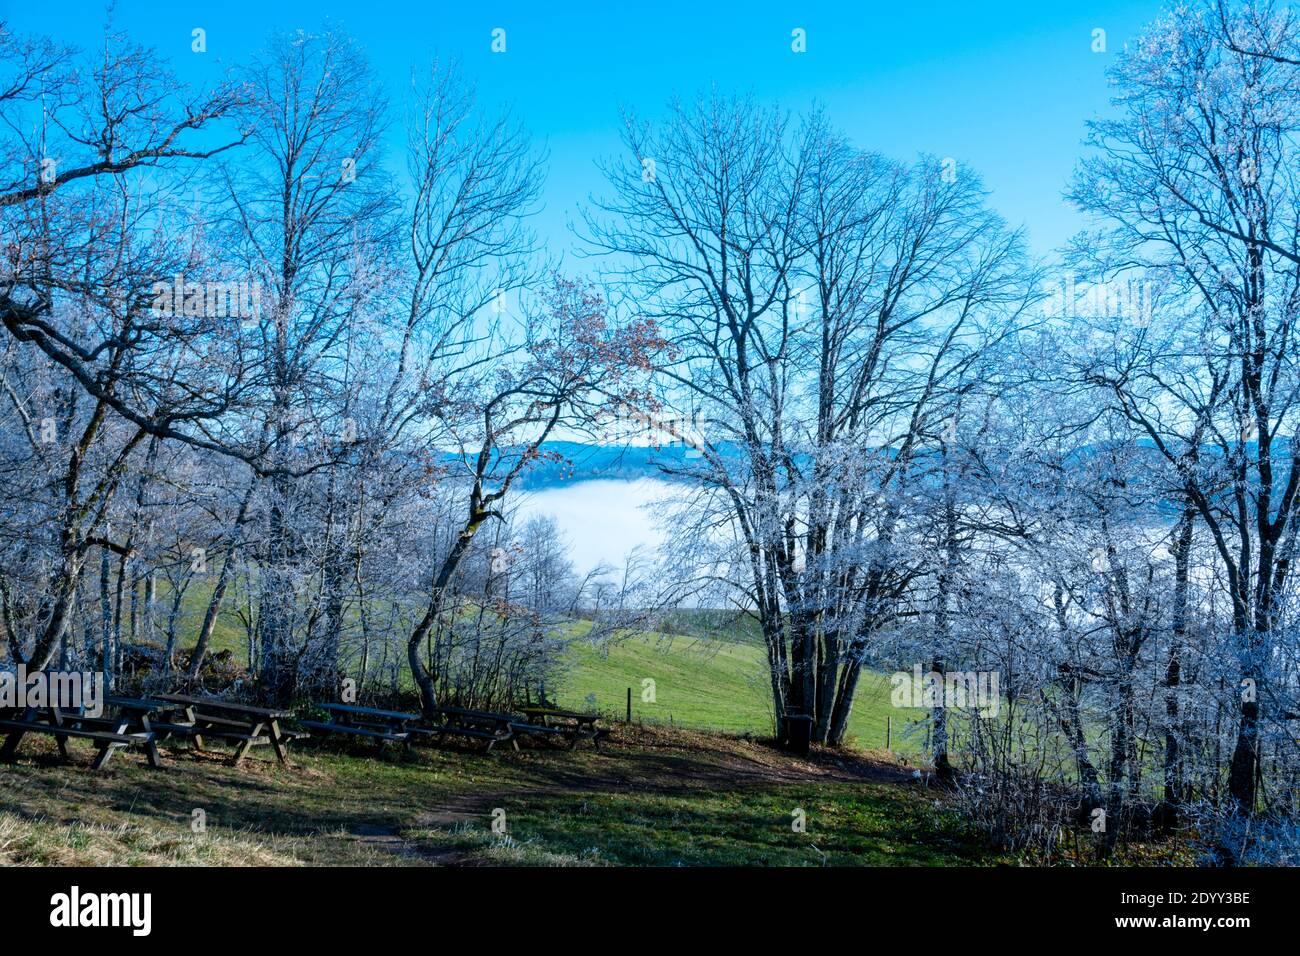 Österreich, Niederösterreich, Scheibbs, Bäume mit Raureif am Blassenstein Stock Photo